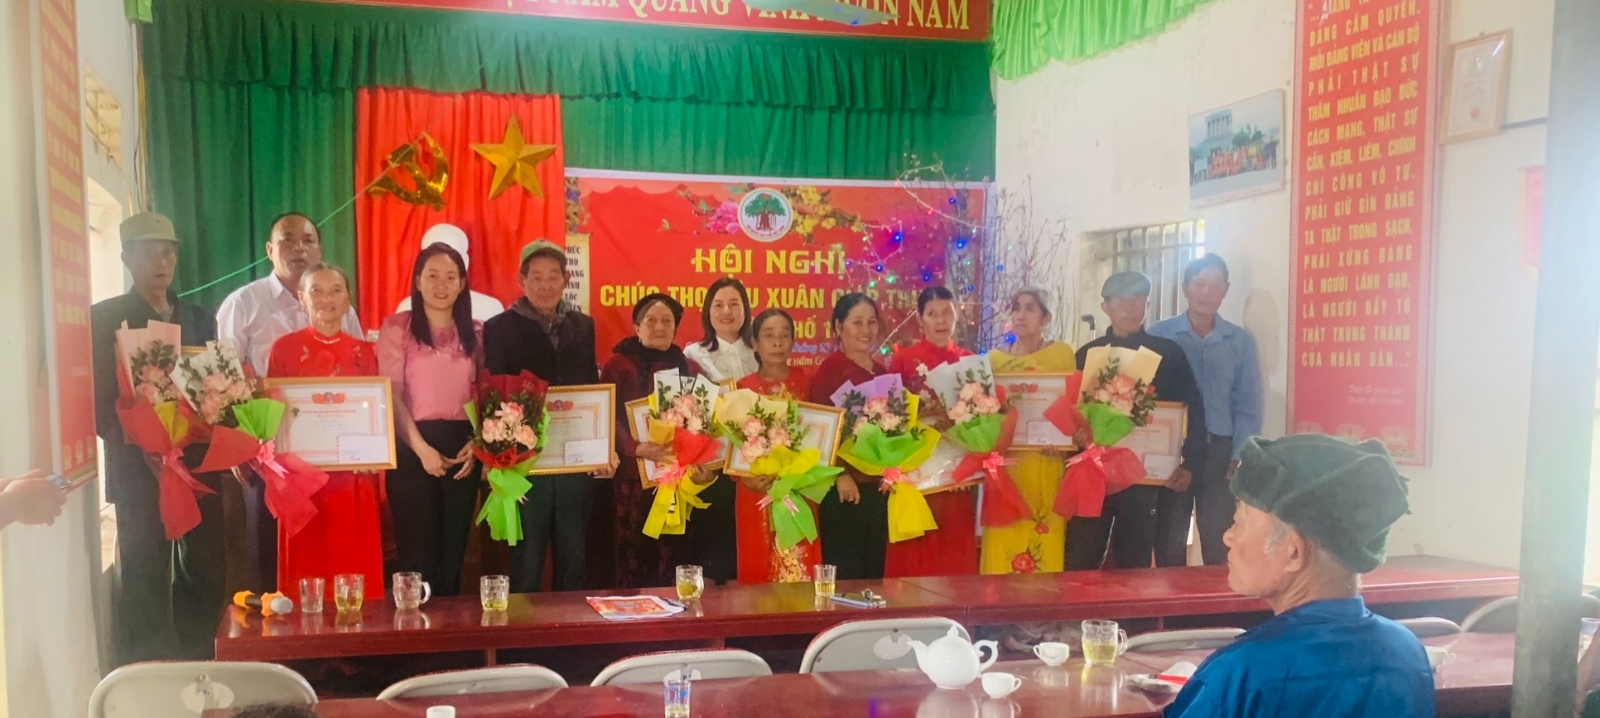 Đồng chí Nguyễn Thị Mai, Thị uỷ viên, Bí thư Đảng uỷ phường dự lễ chúc thọ, mùng thọ và trao quà cho các cụ tại đơn vị khối 15